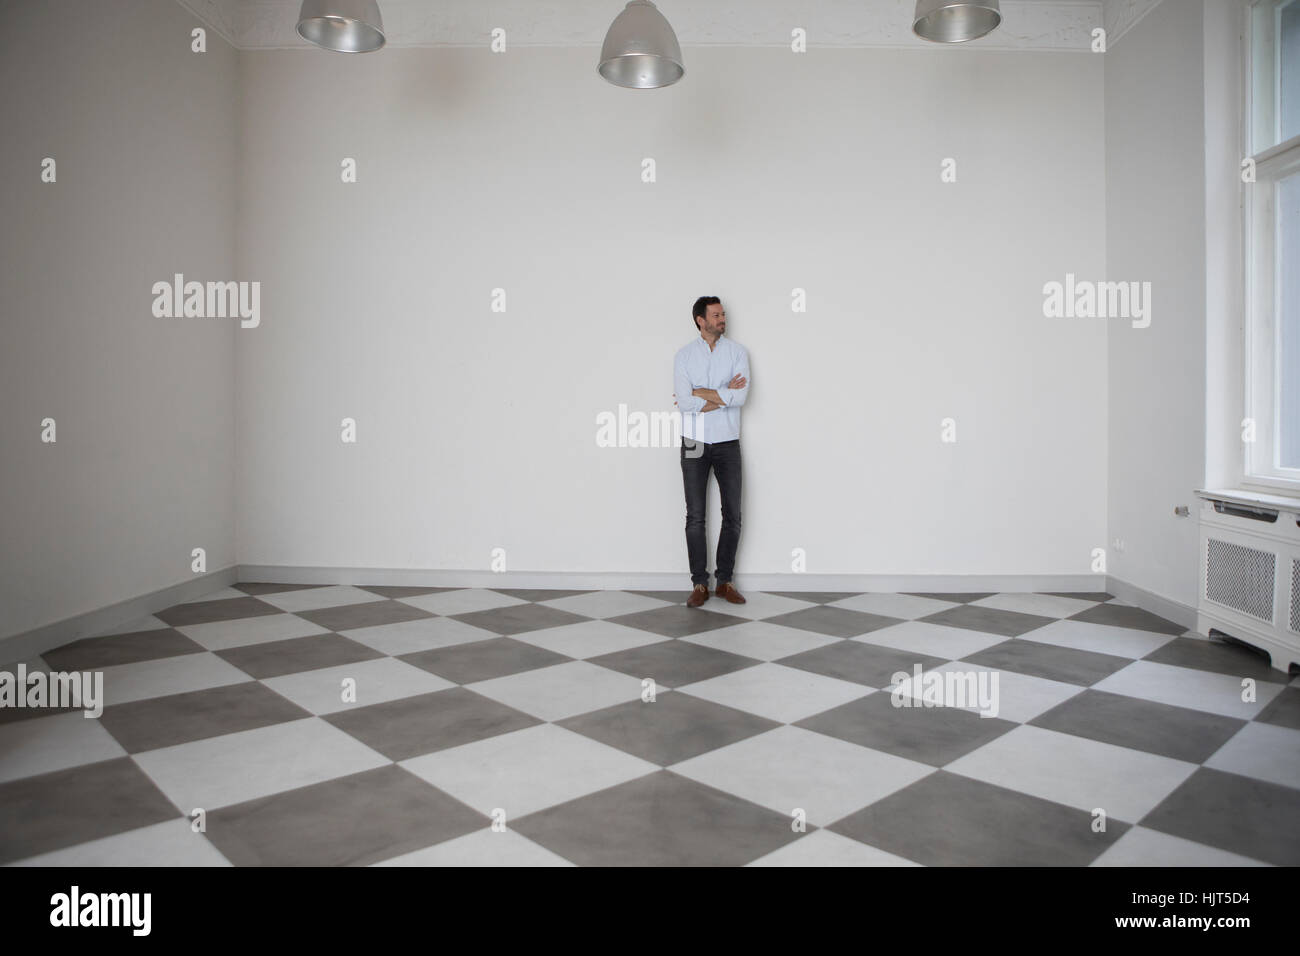 Homme debout dans la salle vide à la recherche d'une fenêtre Banque D'Images